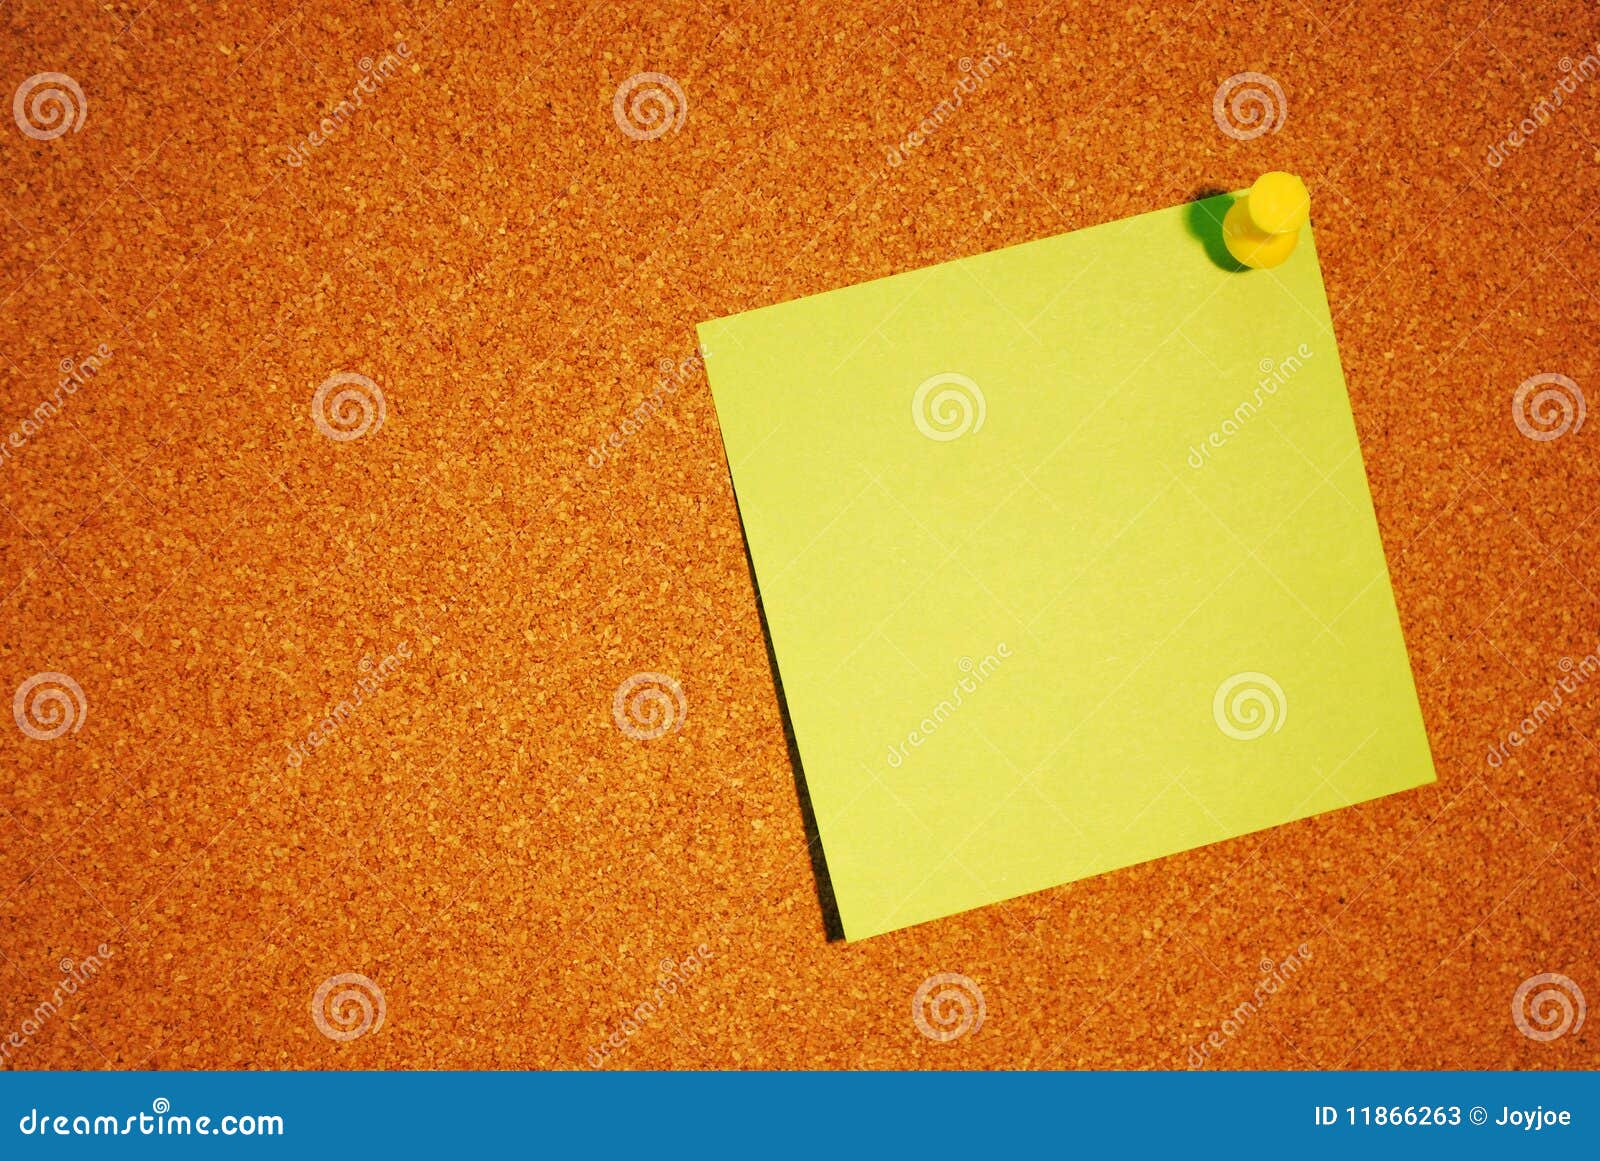 Nota sobre bord del corcho. Una foto de un documento de nota amarillo sobre un marrón - bord anaranjado del corcho.